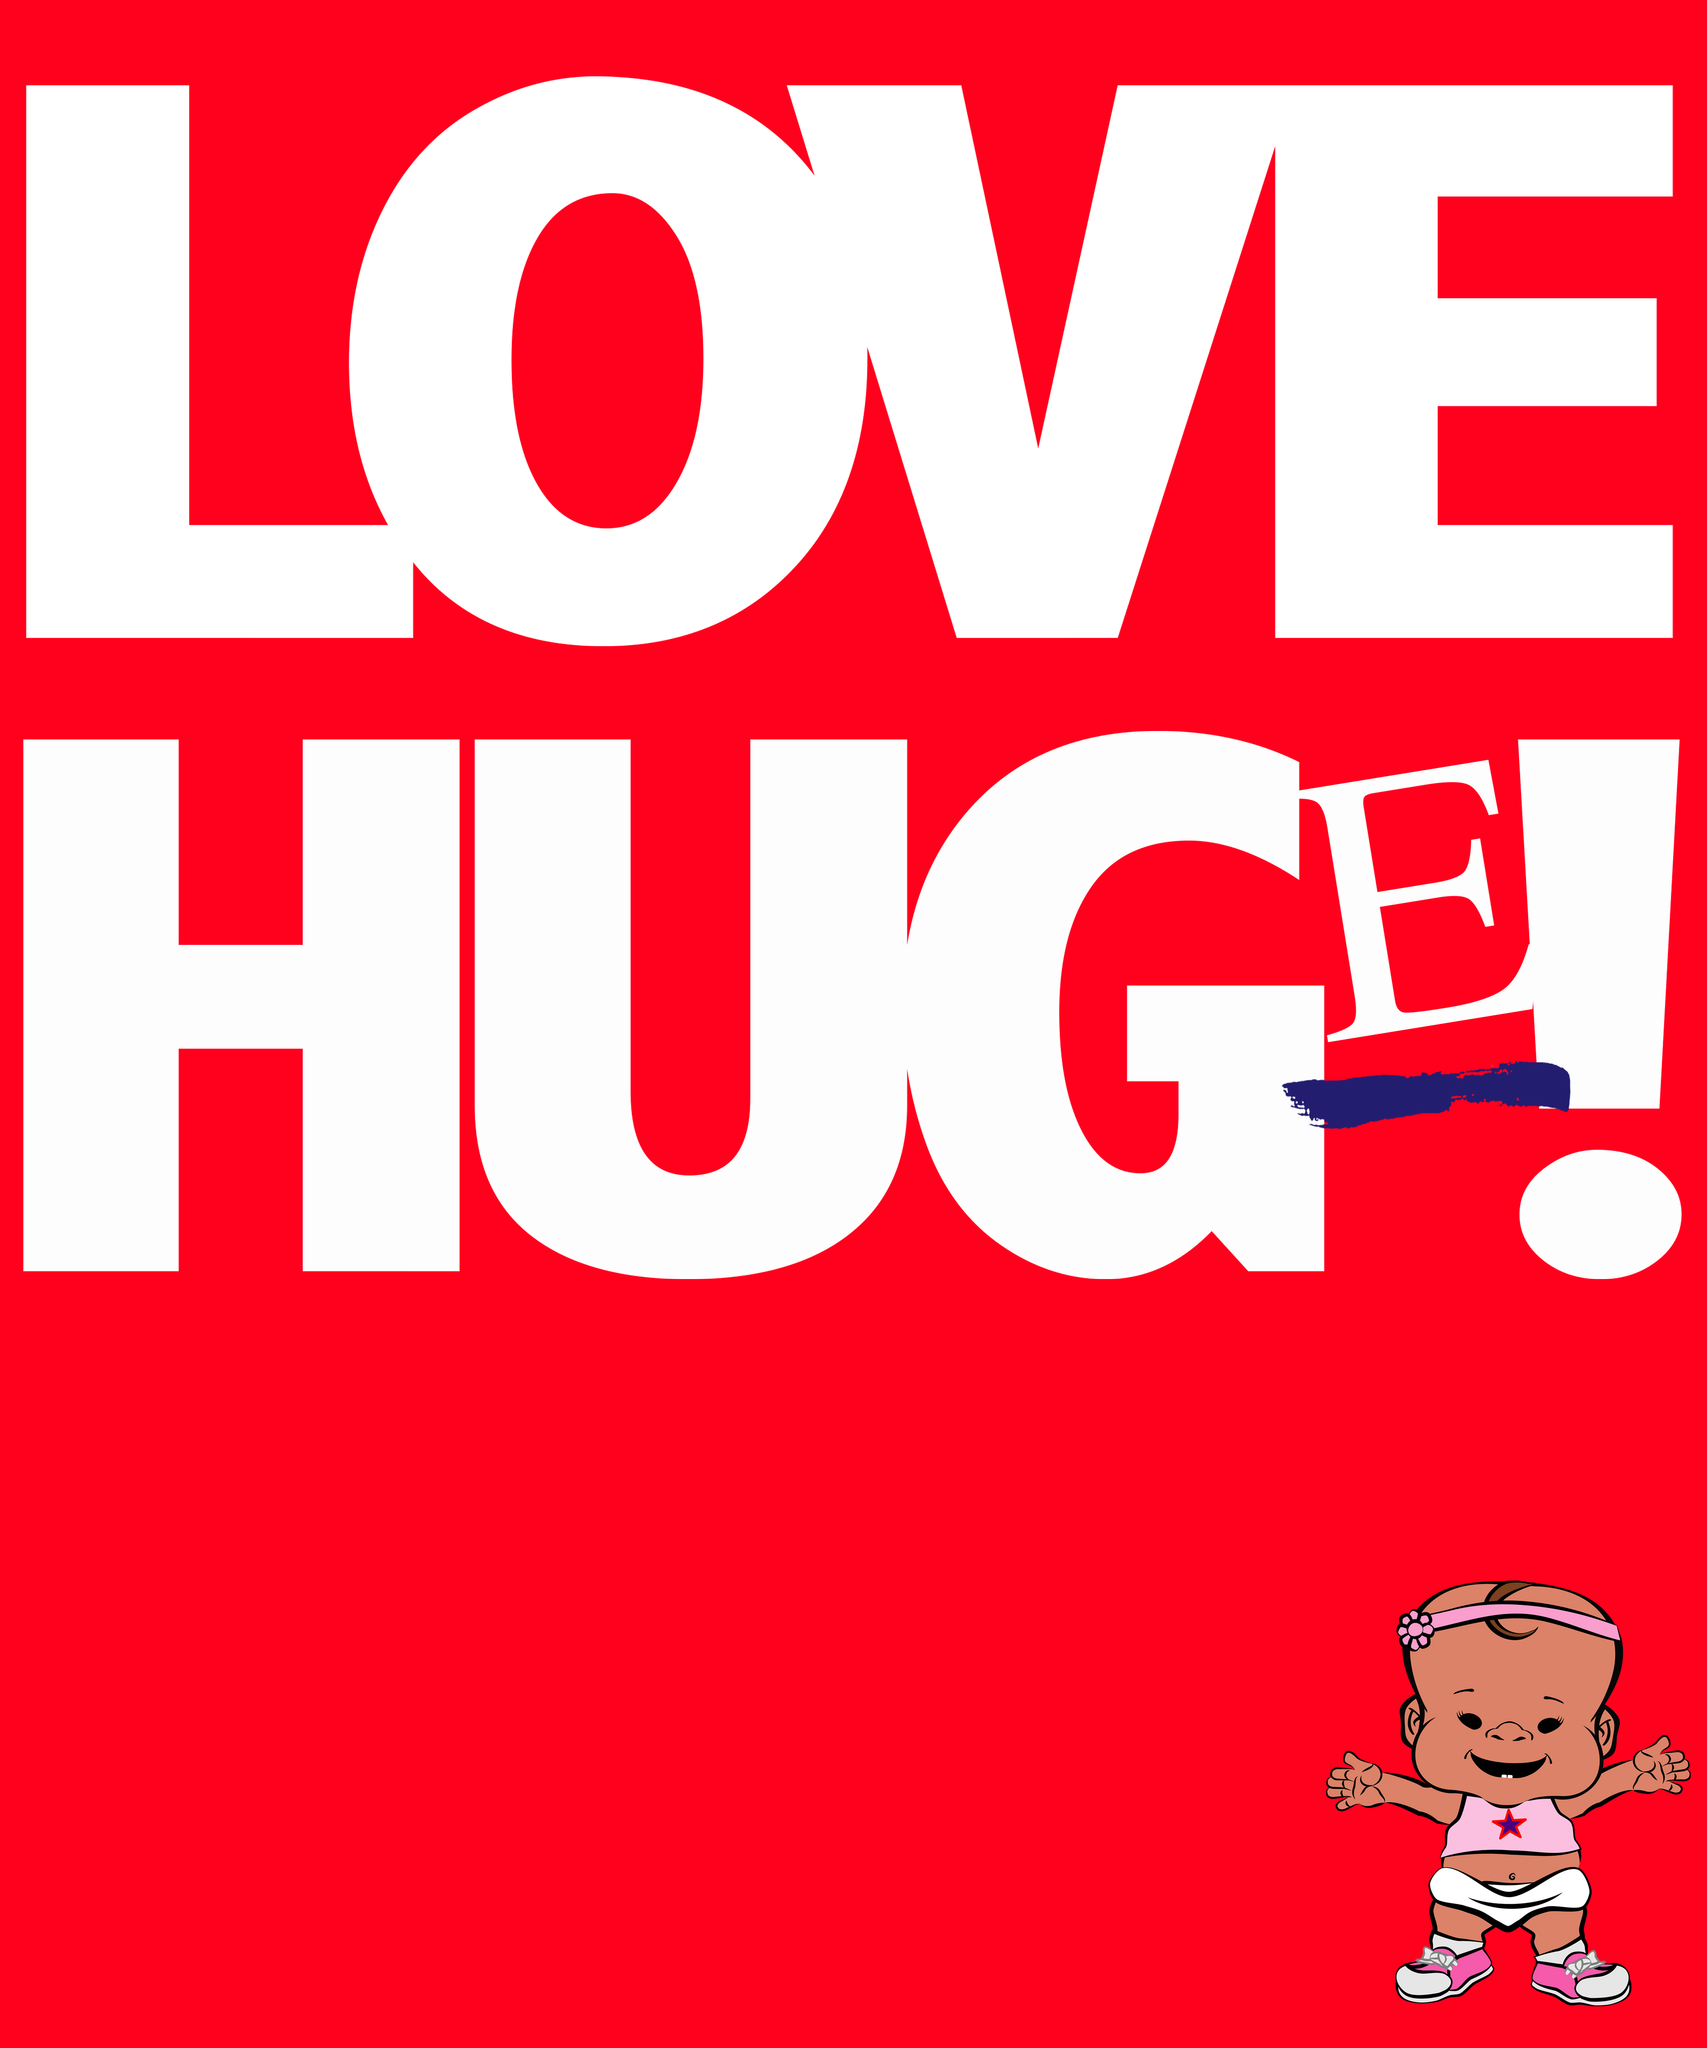 PBHZ1256_Love_Hug(e)_girl_4_Red